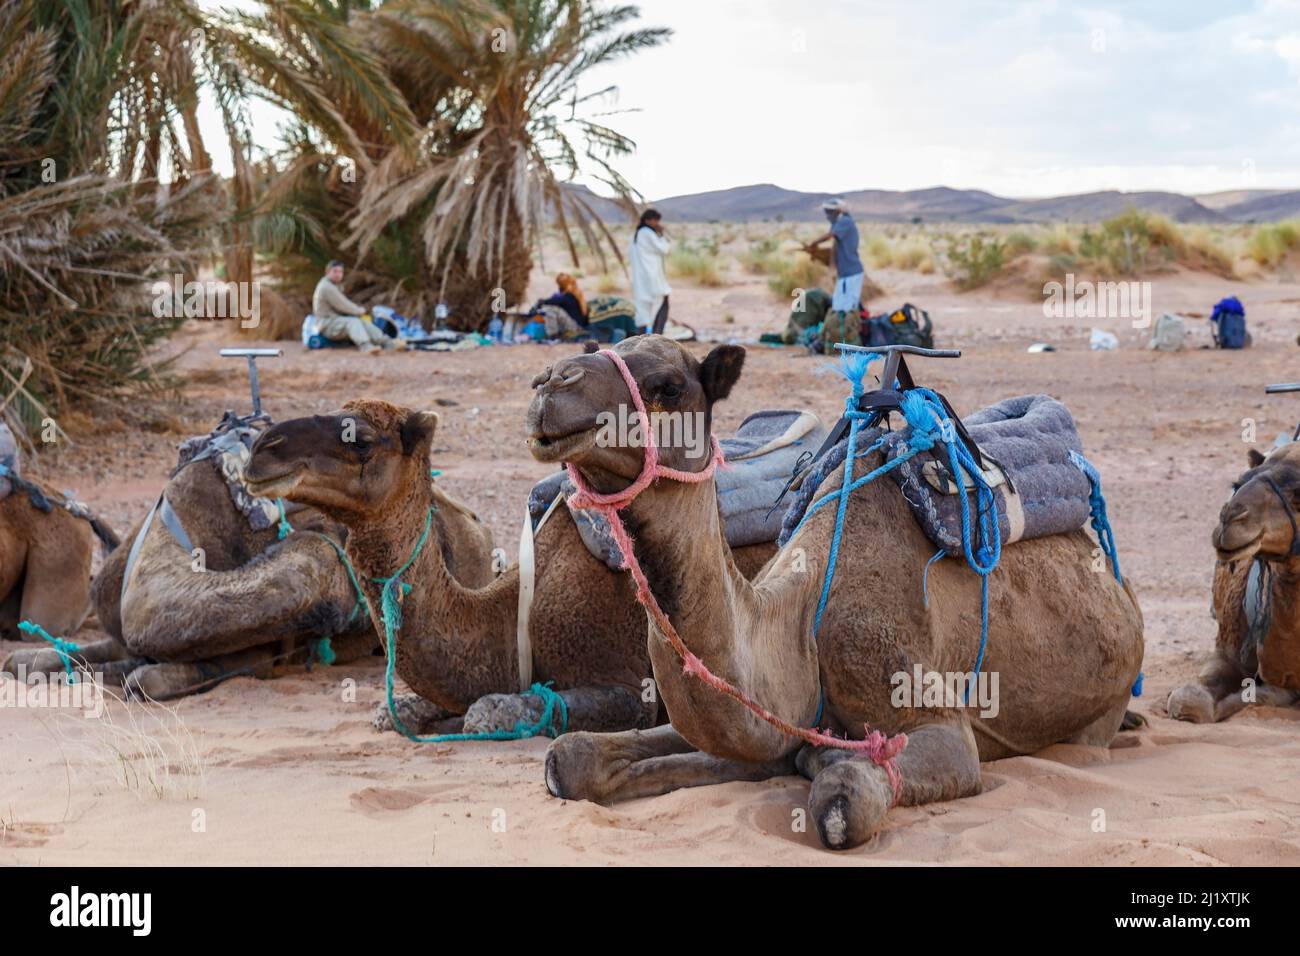 chameaux se trouvant sur le sable dans une oasis, désert du sahara Banque D'Images